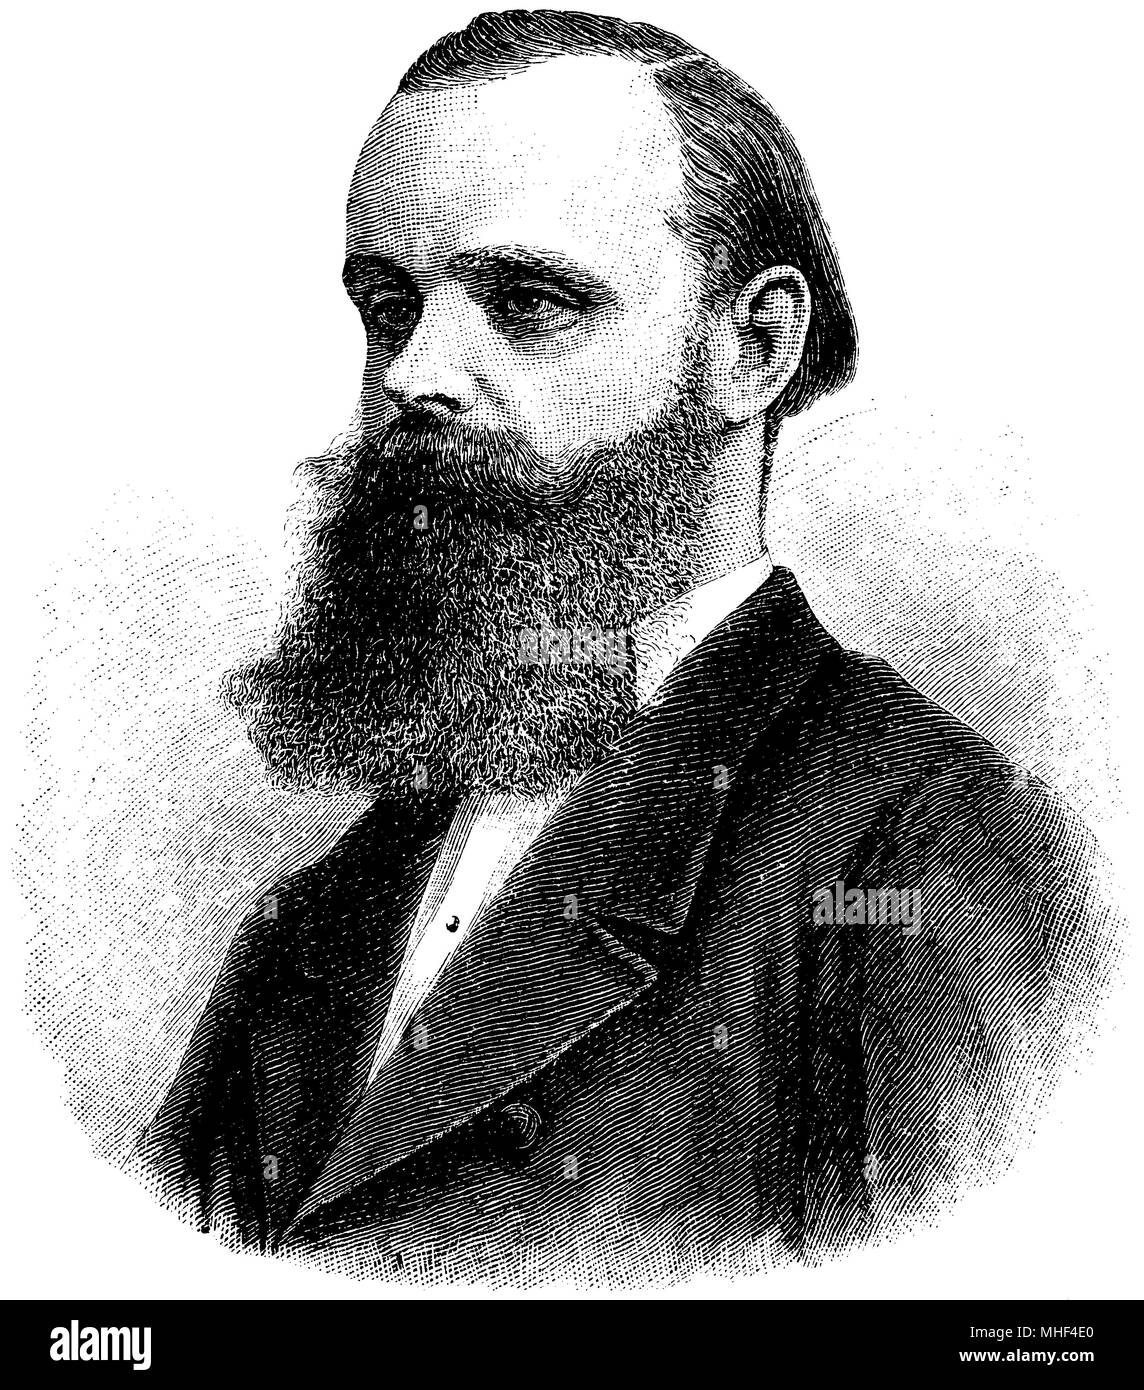 Karl Klaus von der Decken (born 8 August 1833 , died October 2, 1865 ), Stock Photo